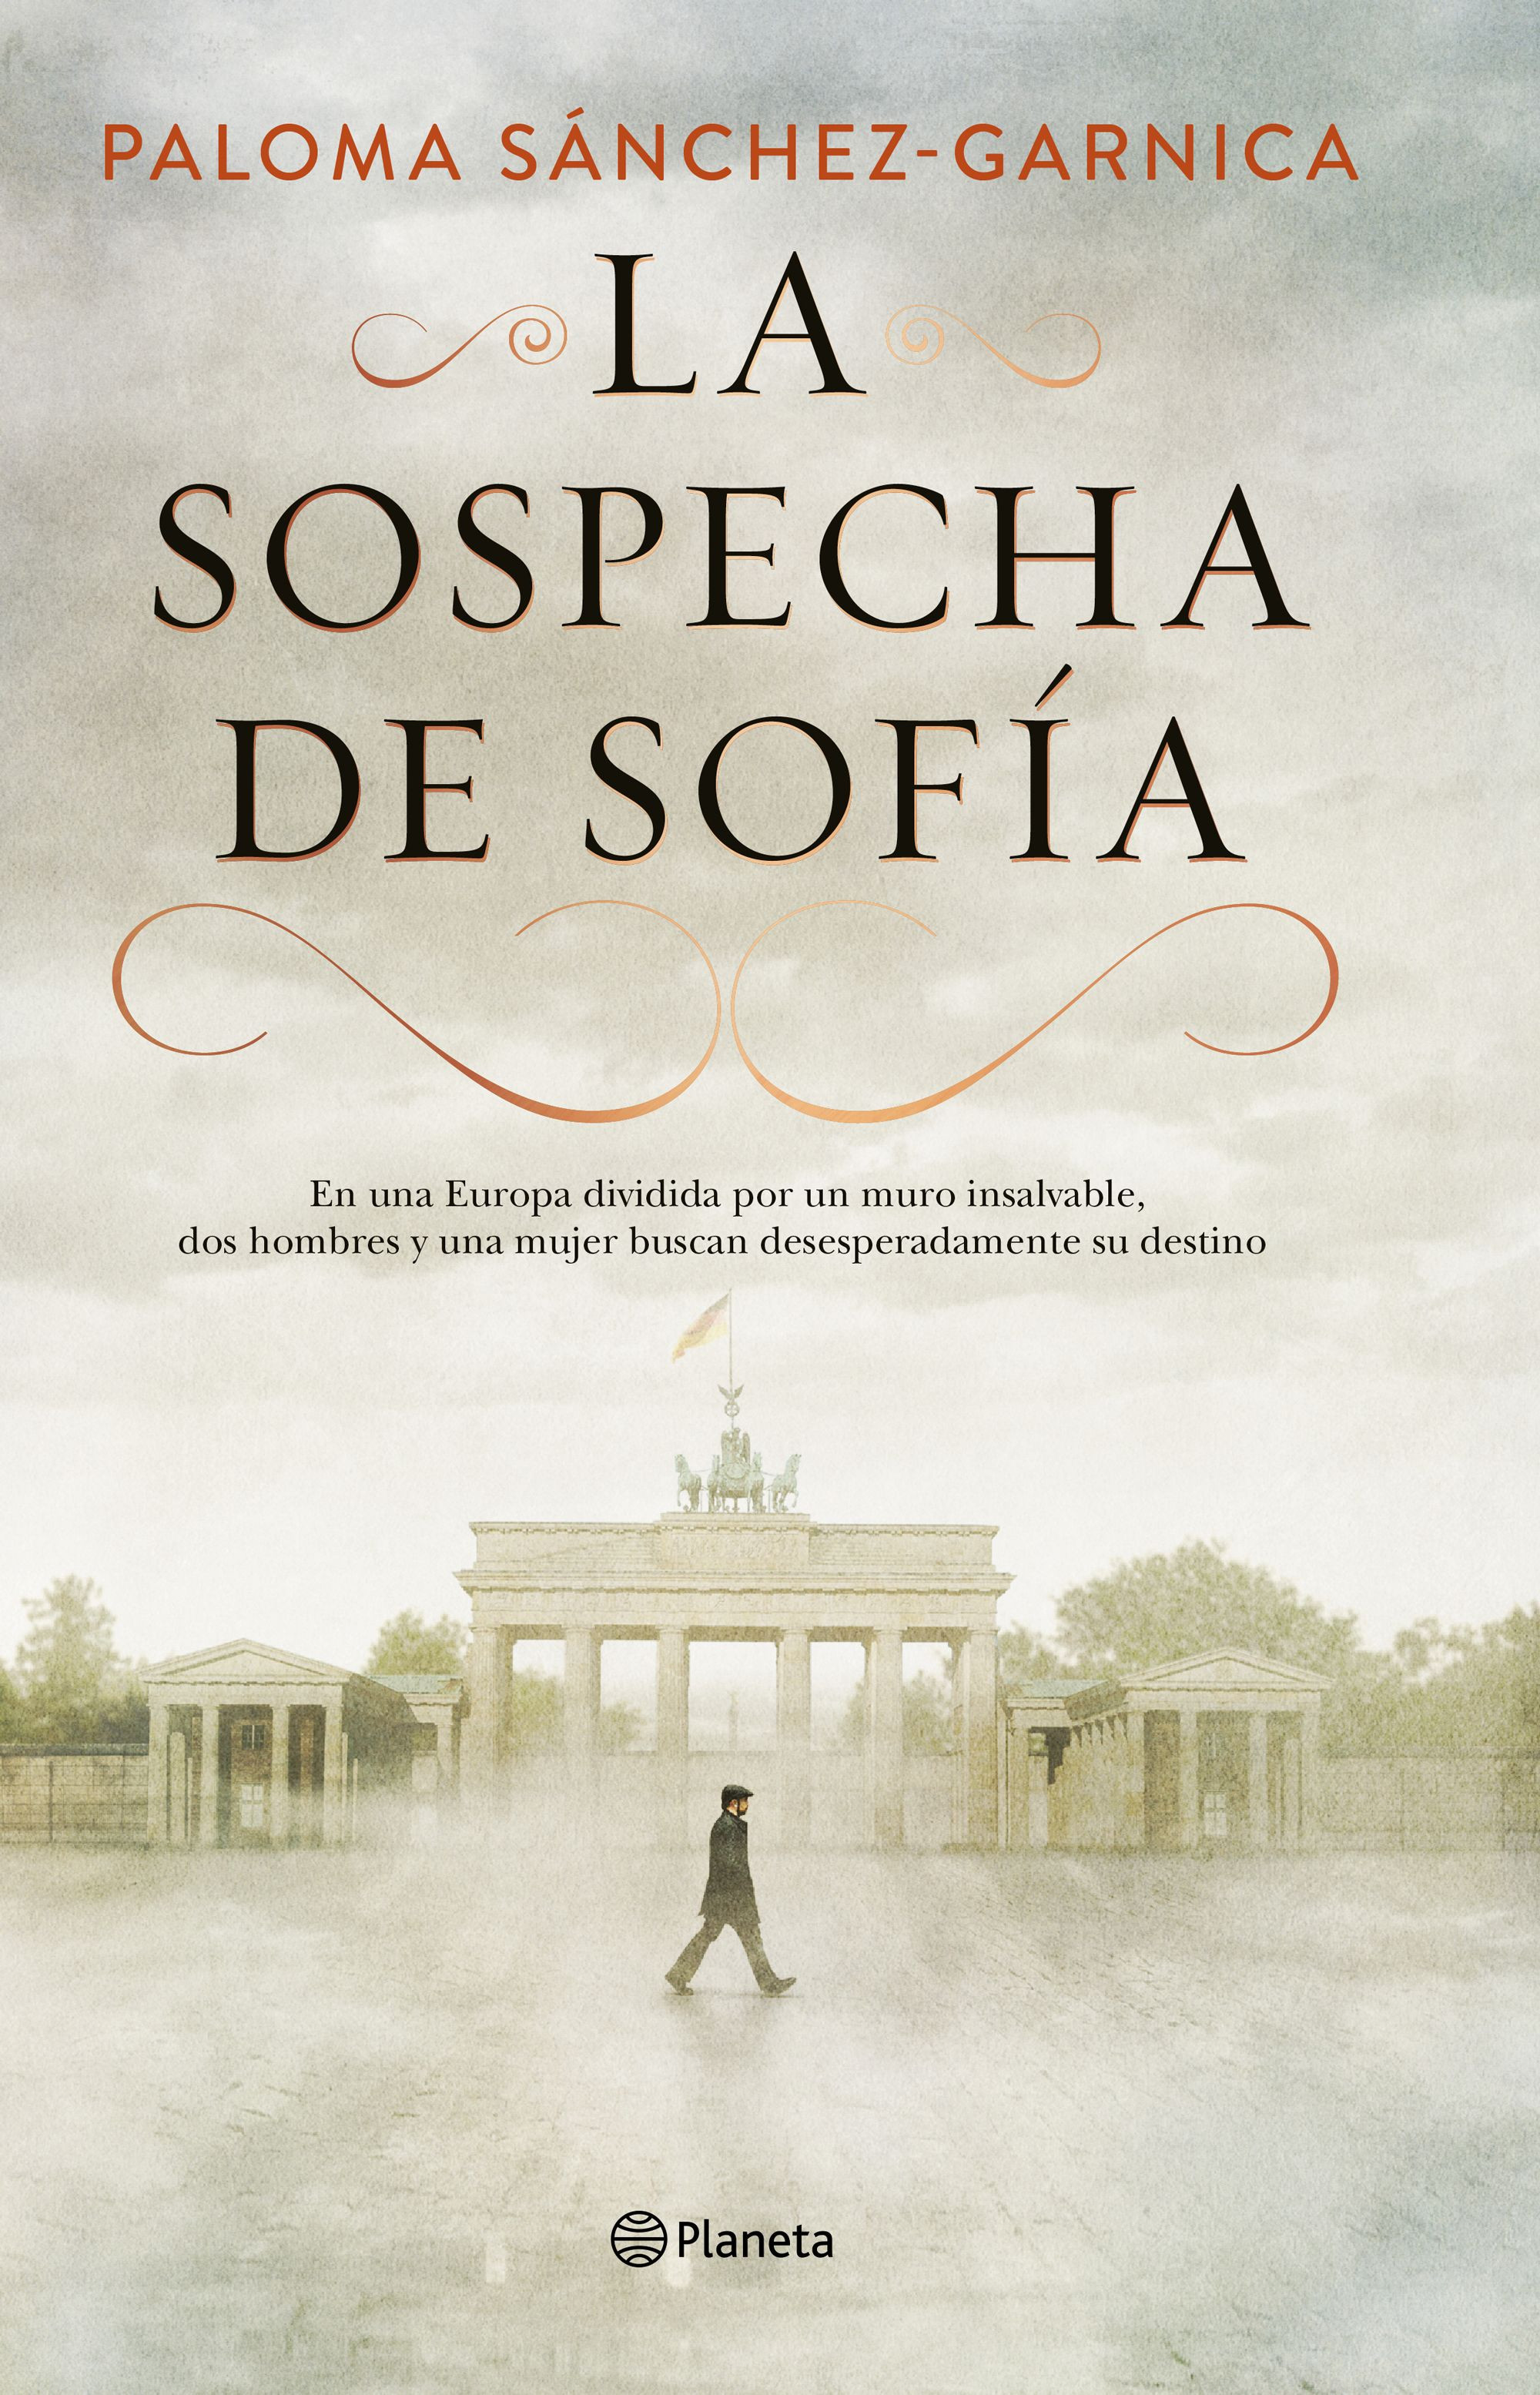 Imagen La Sospecha de Sofía. Paloma Sánchez-Garnica 1